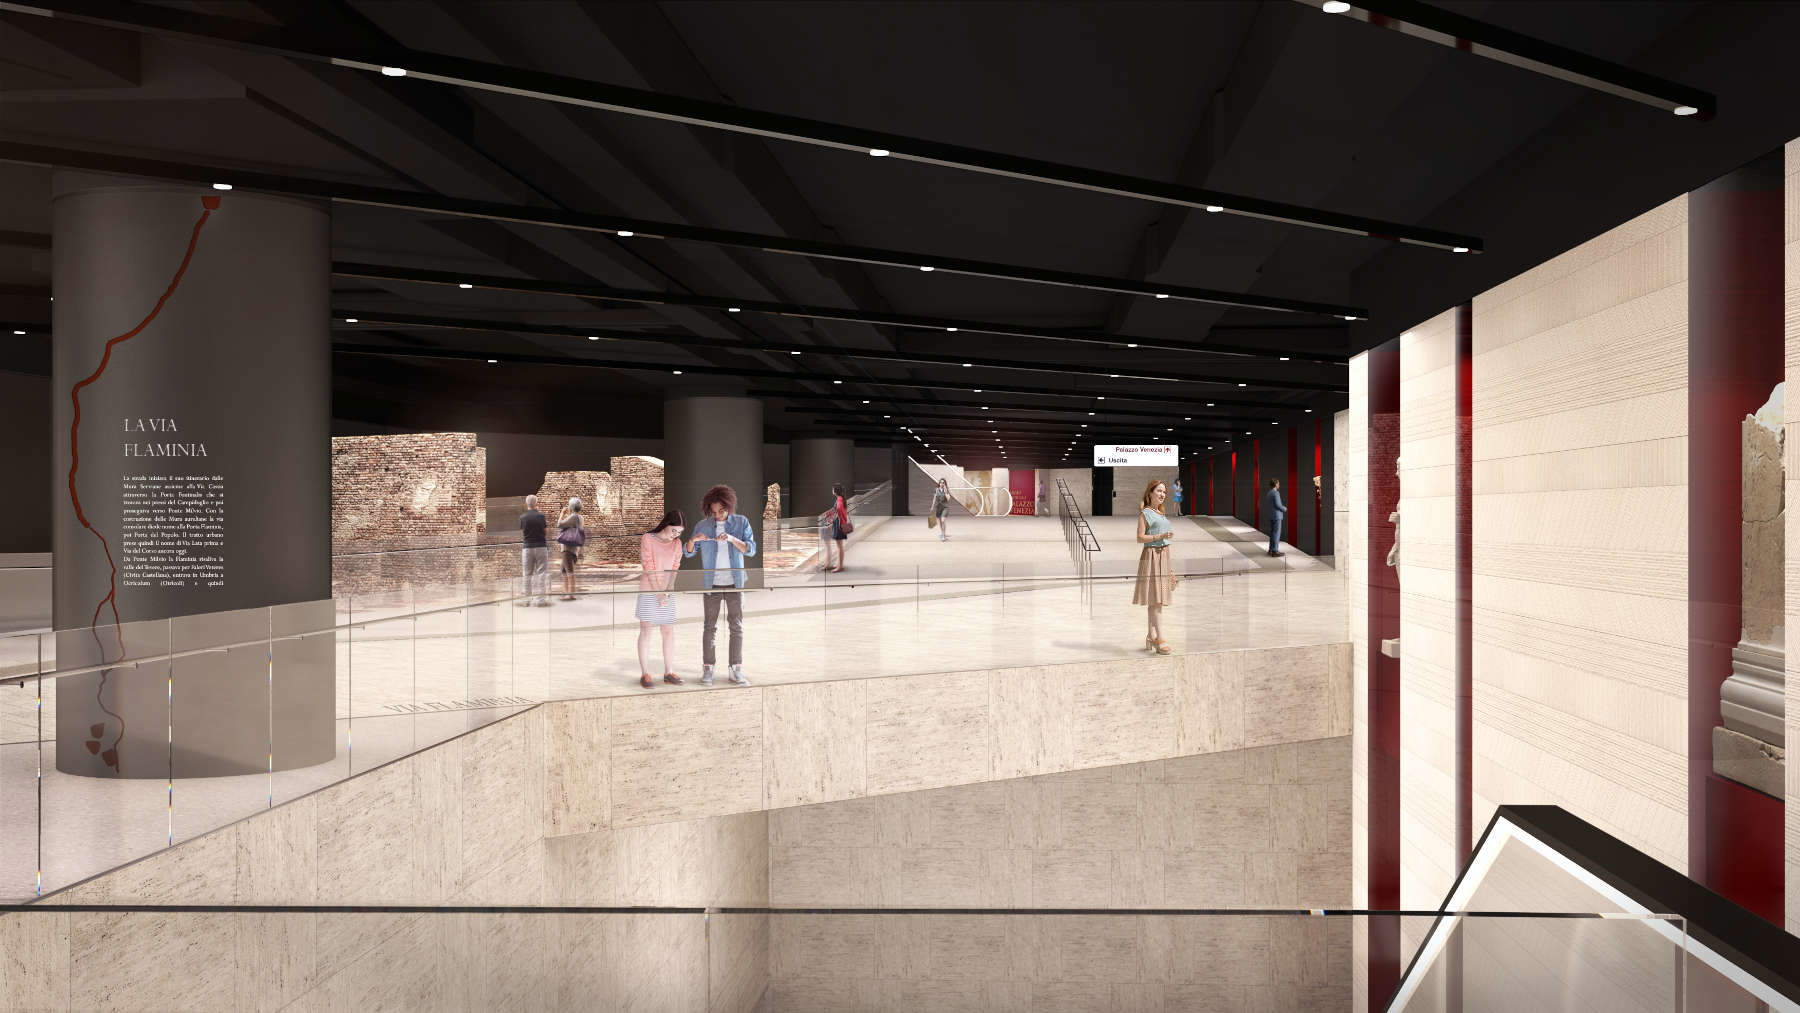 Une station de métro qui sera aussi un musée : la station Piazza Venezia à Rome